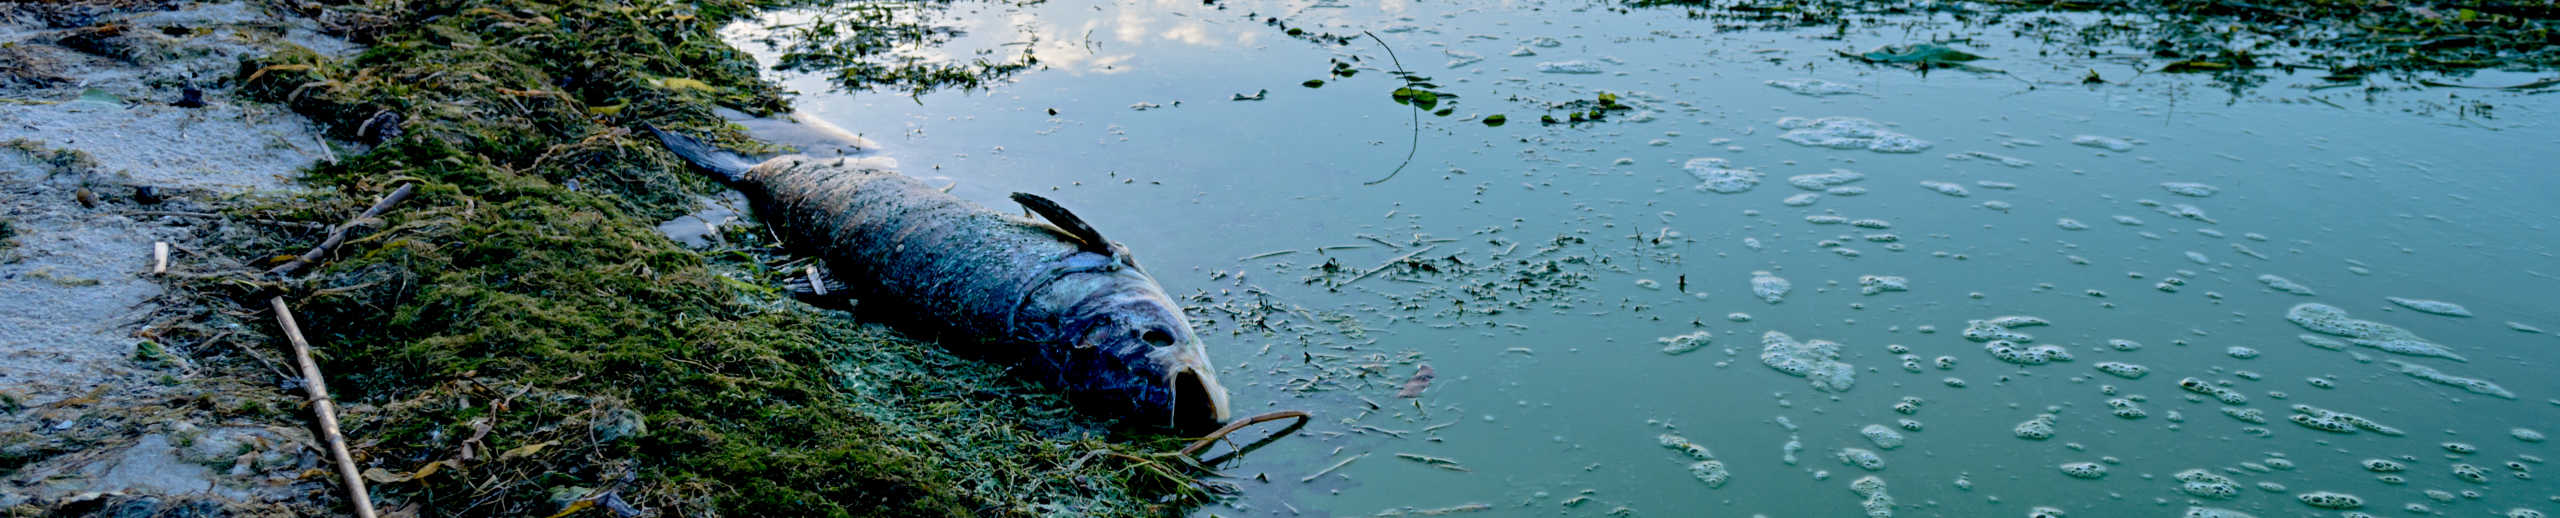 Toter Fisch am Ufer eines eutrophierten Sees